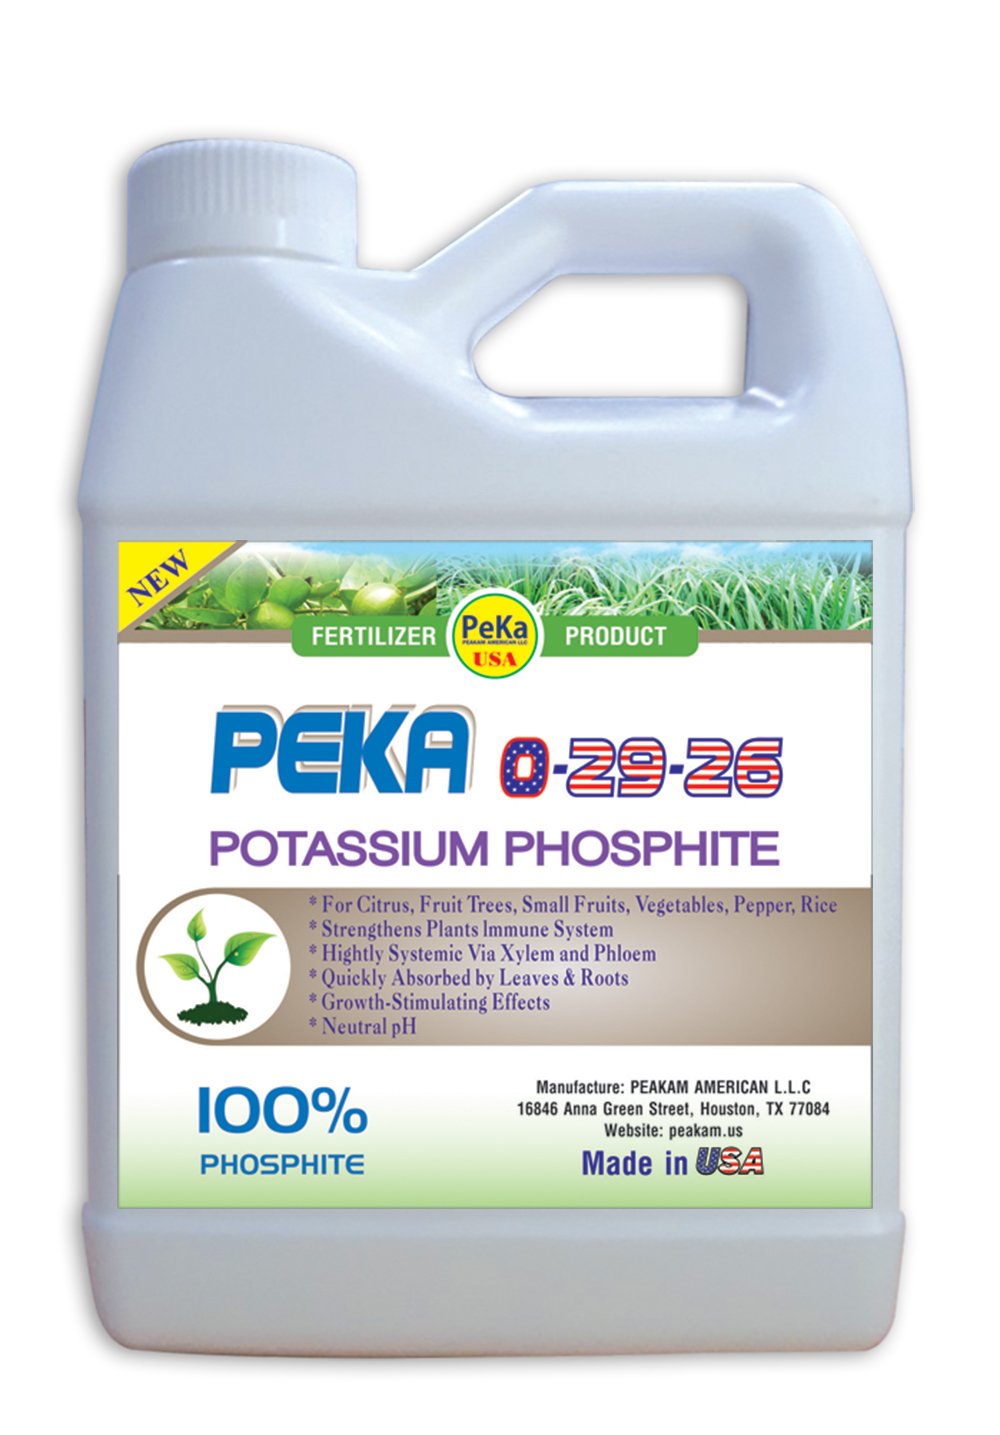 Hiệu quả sử dụng phân bón PK Peka 0-29-26 (POTASSIUM PHOSPHITE) trên cây trồng